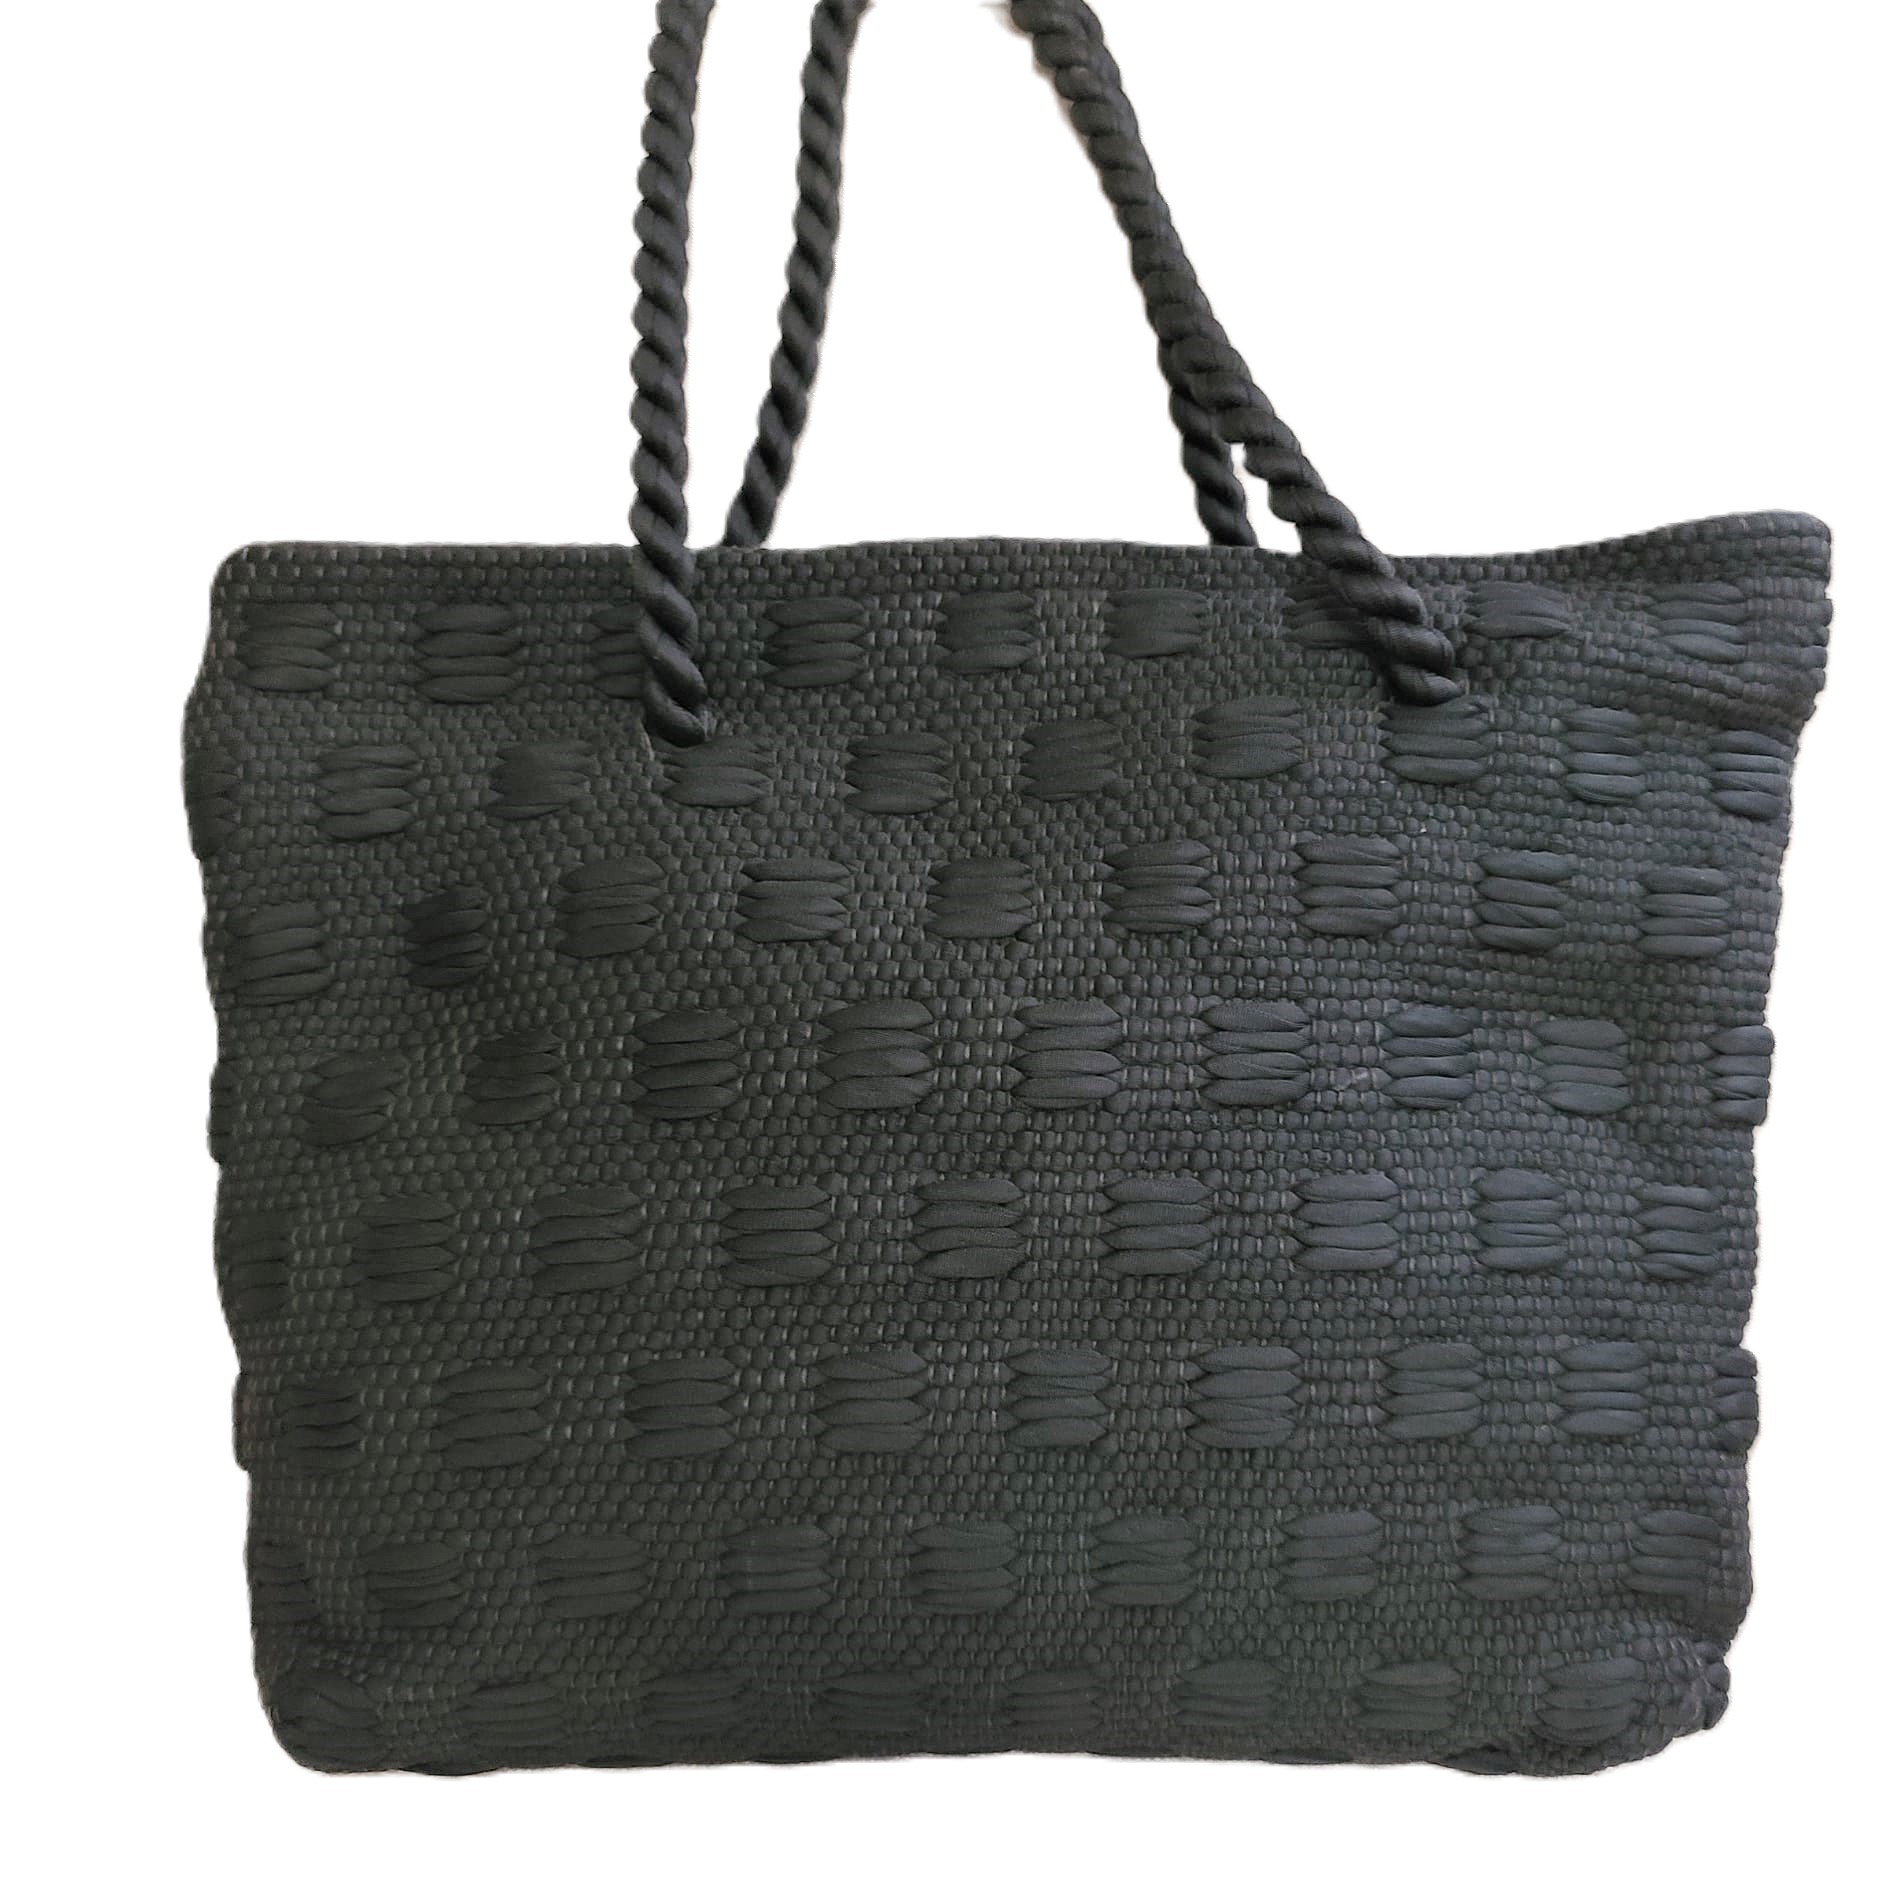 Macrame style black weave vintage tote bag